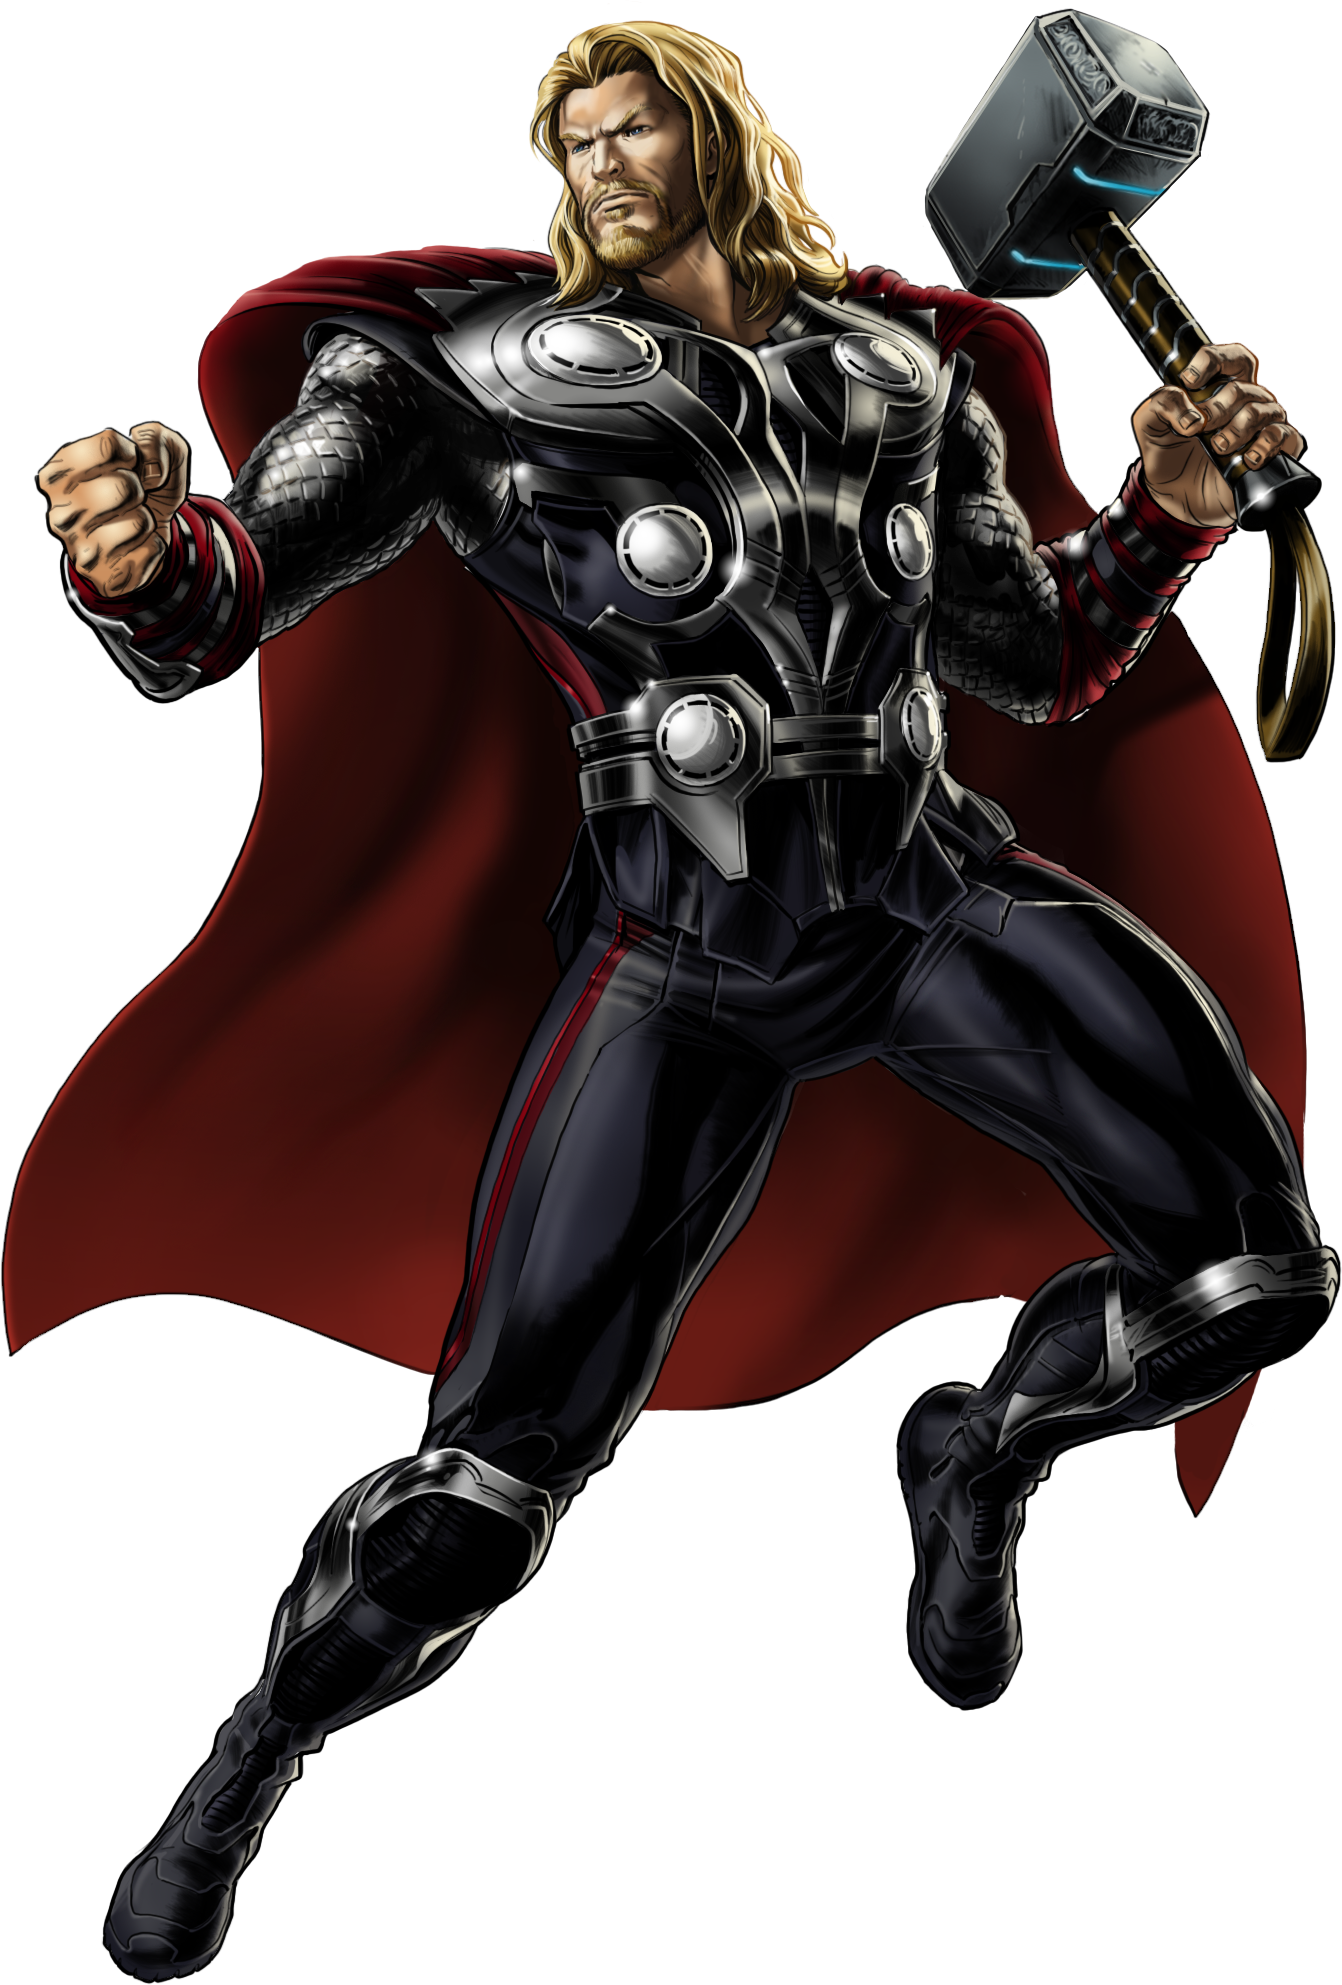 Image Avengers Thor Right Portrait Artpng Marvel Avengers